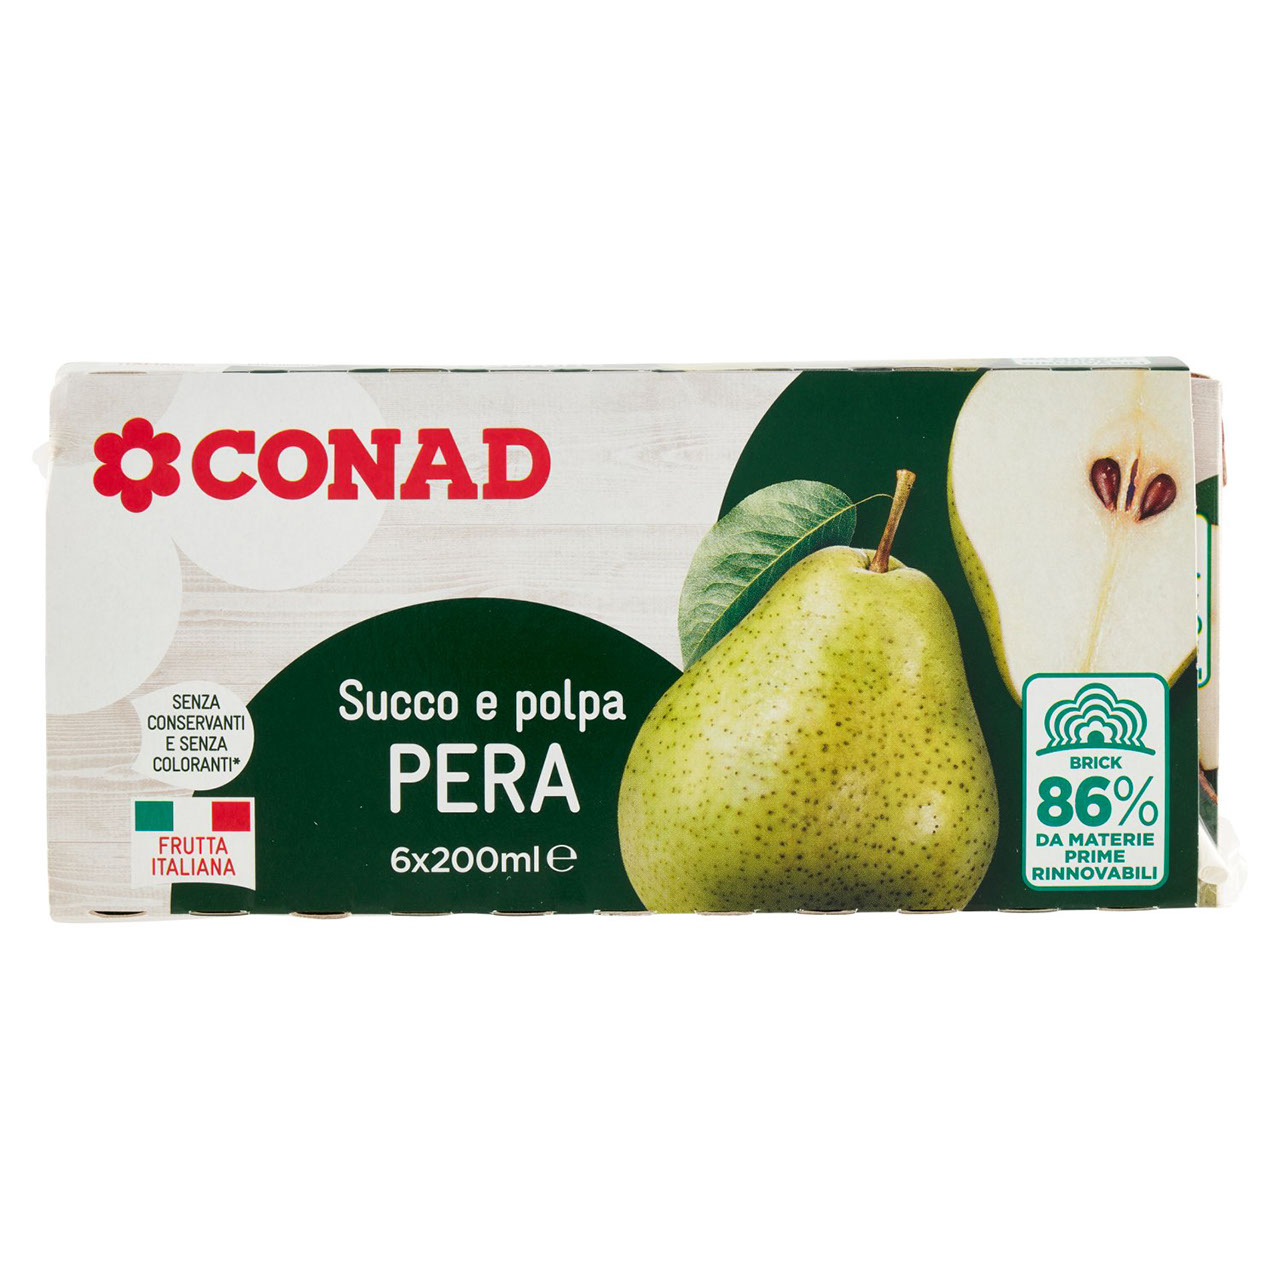 Succo e polpa Pera 6x200ml Conad